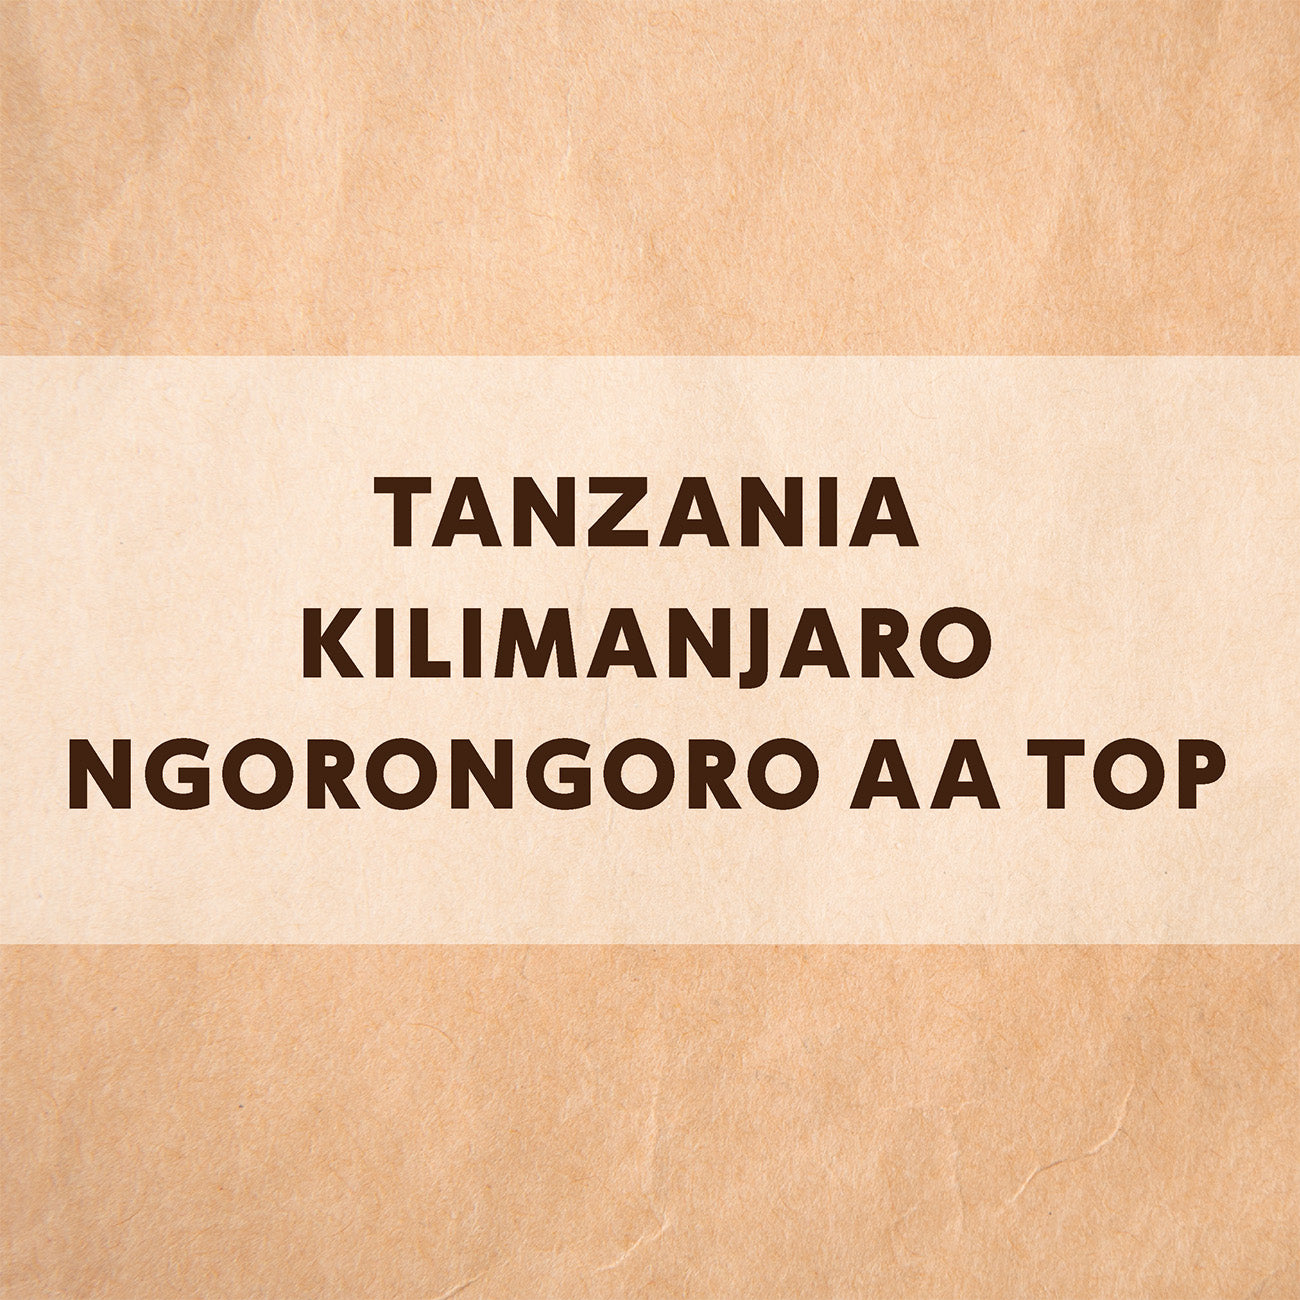 タンザニア キリマンジャロ ンゴロンゴロ AA TOP